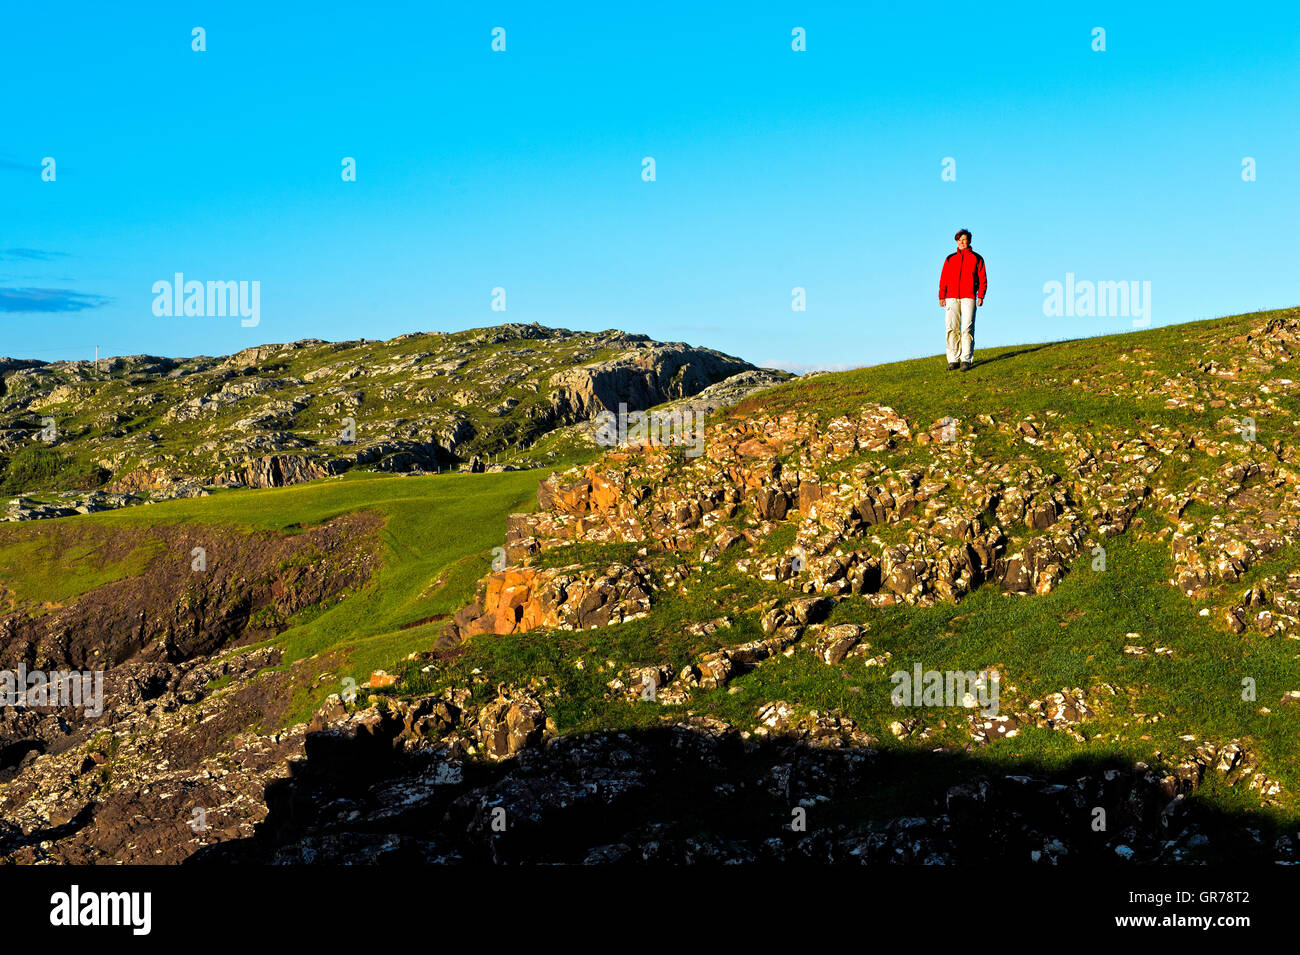 Frau In einer roten Jacke, stehend auf felsigen Wiese, Assynt, Schottland, Großbritannien Stockfoto